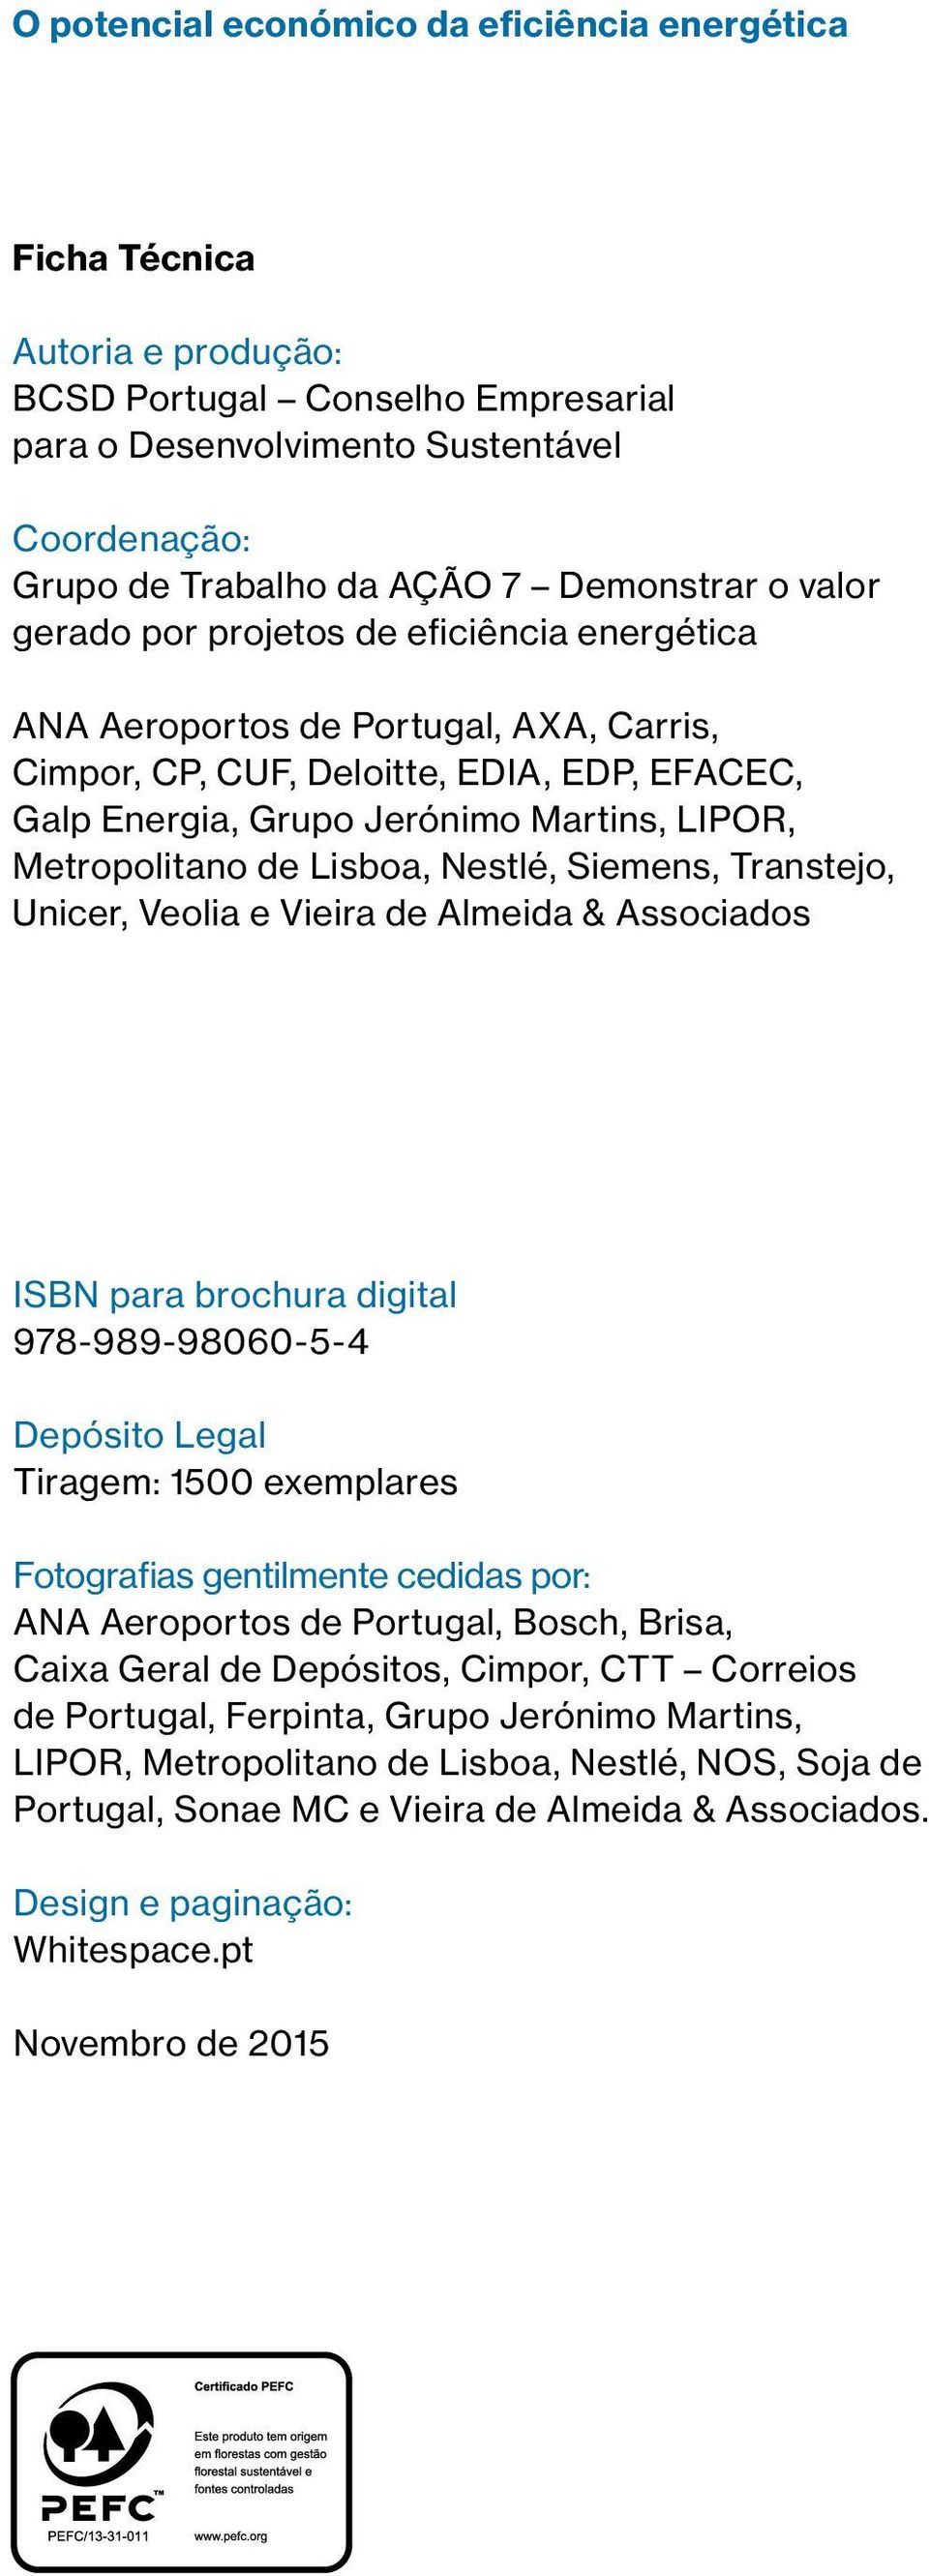 Metropolitano de Lisboa, Nestlé, Siemens, Transtejo, Unicer, Veolia e Vieira de Almeida & Associados ISBN para brochura digital 978-989-98060-5-4 Depósito Legal Tiragem: 1500 exemplares Fotografias